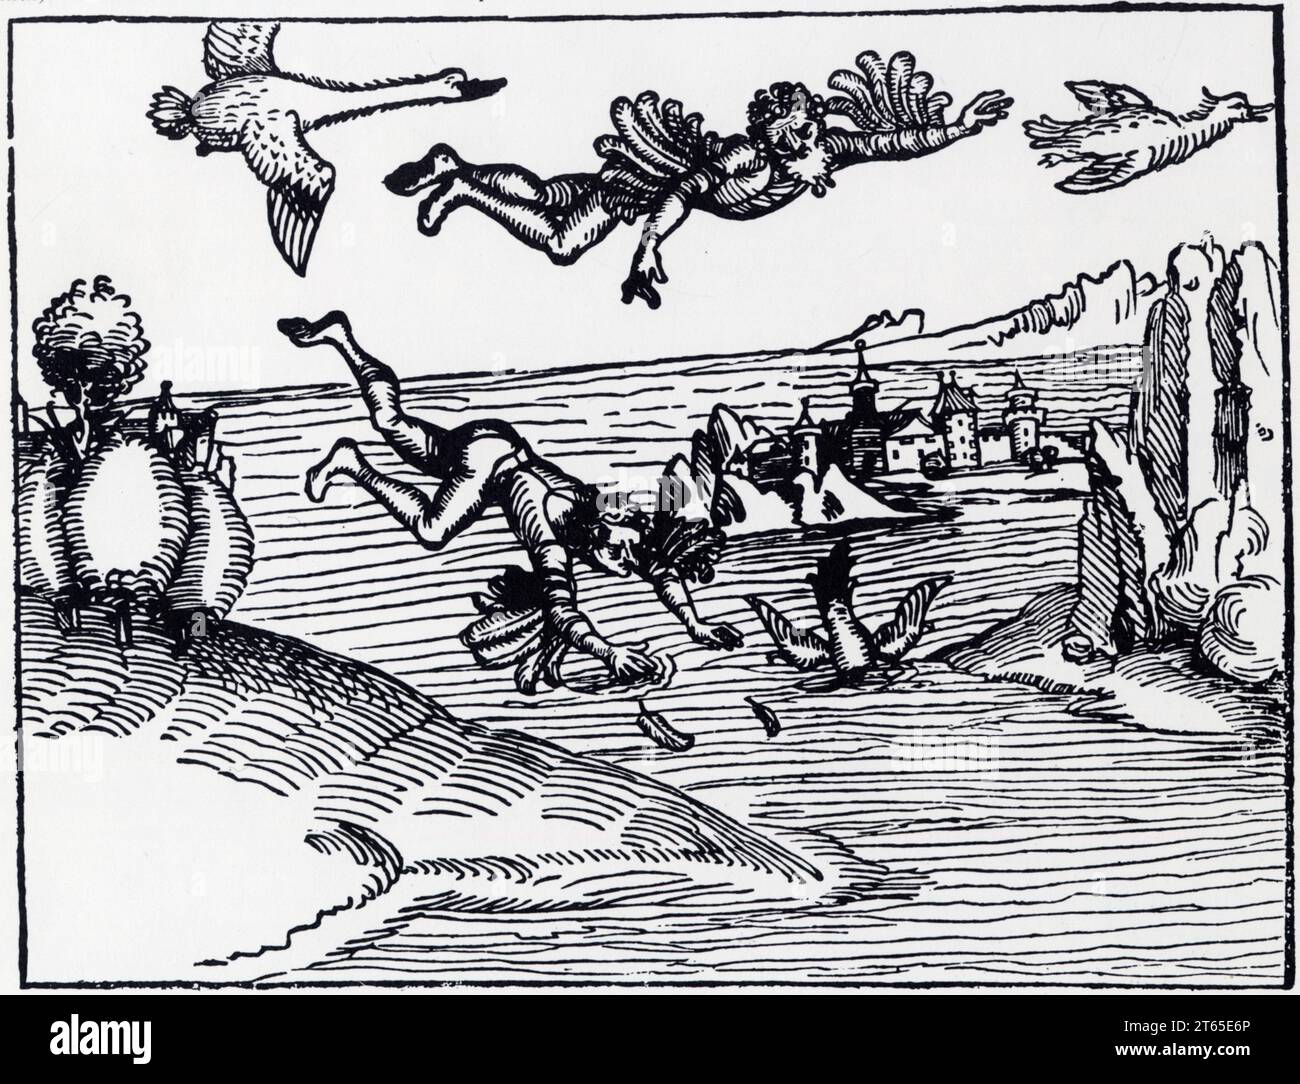 Le vol légendaire de Dédale et d'Icare réalisant le plus vieux rêve de l'homme,selon la mythologie grecque.D'après une gravure sur bois du XV ème sièc Stock Photo